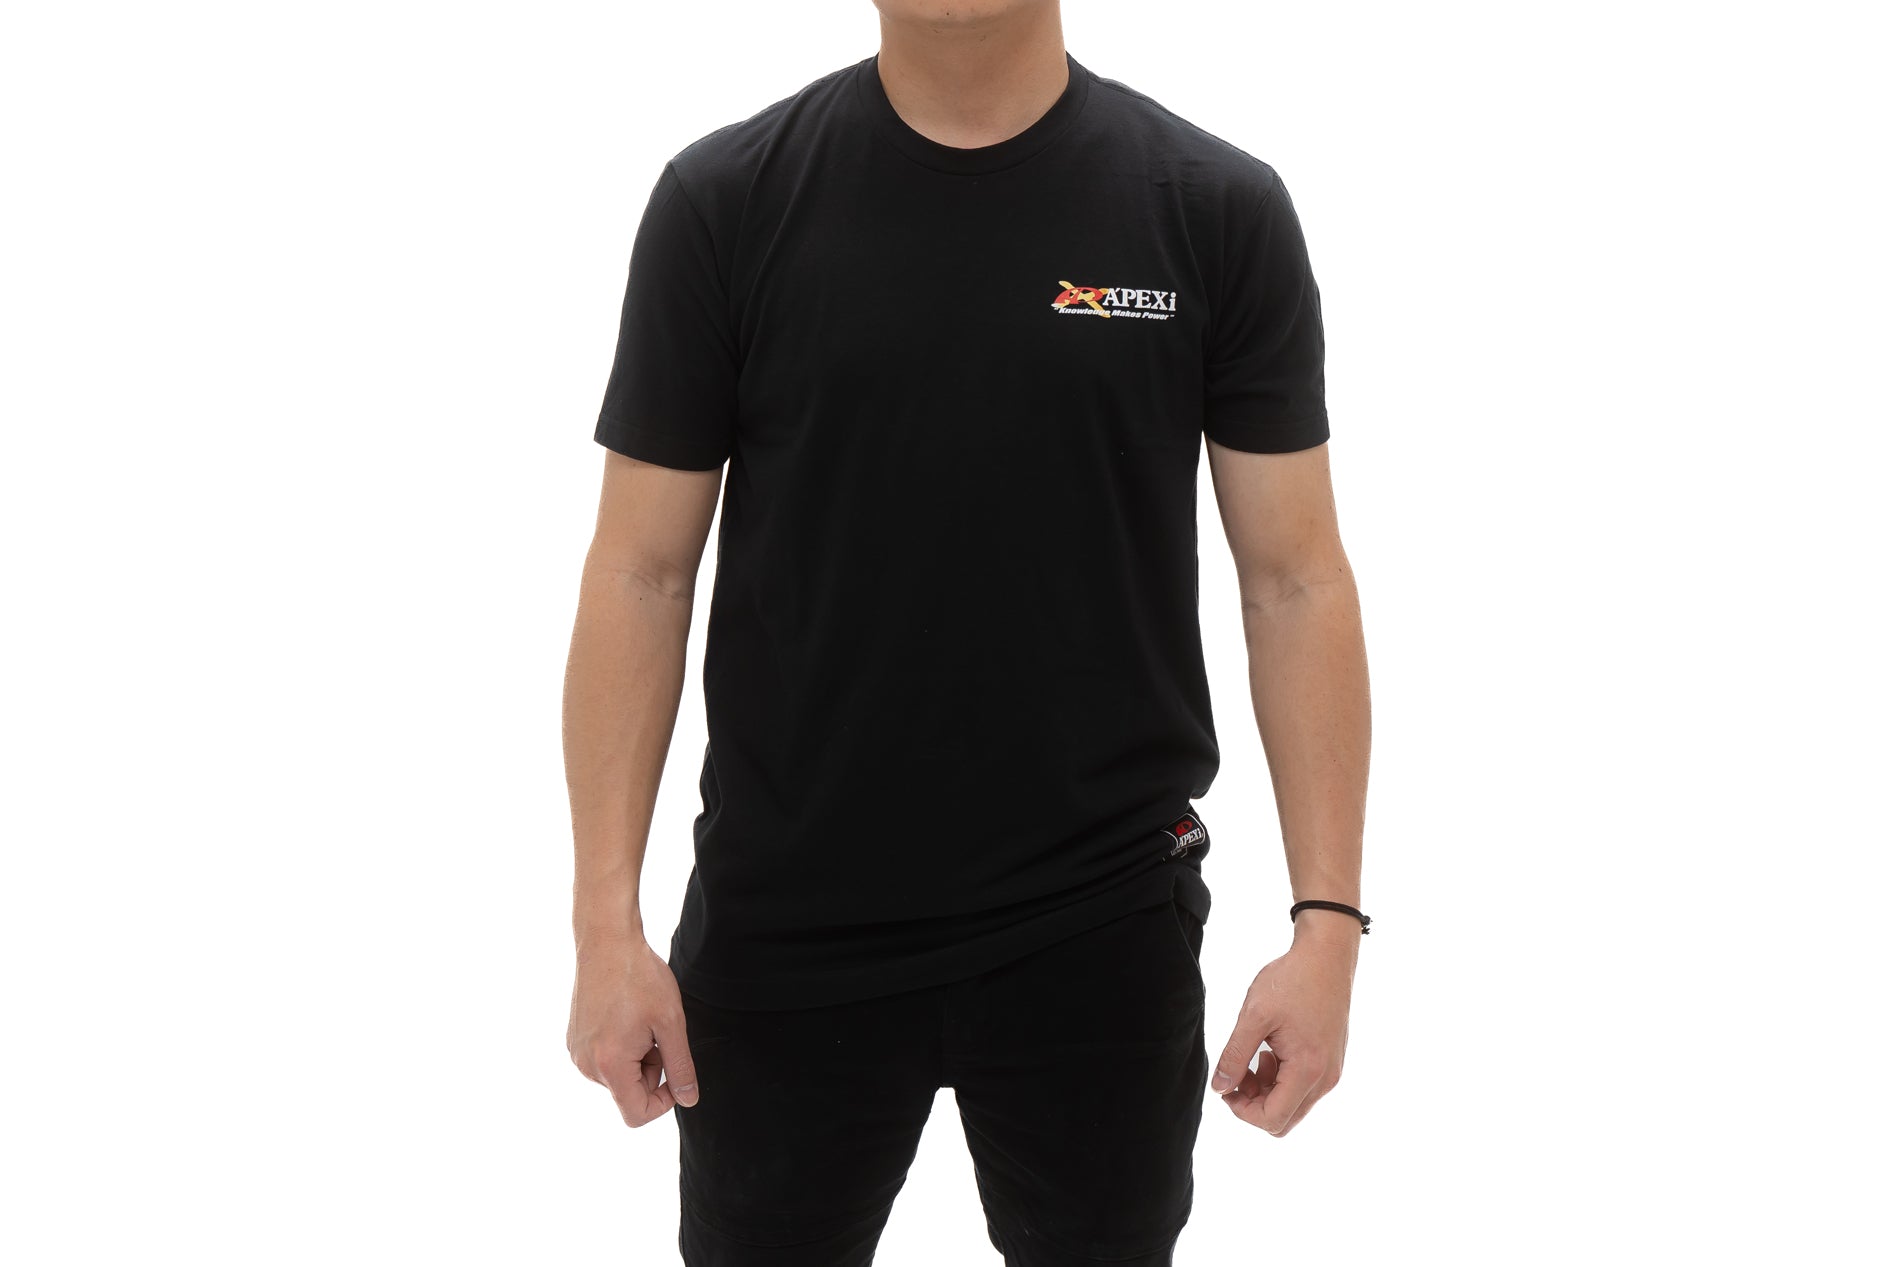 A'PEXi - A'PEXi-X Racing Heritage T-Shirt